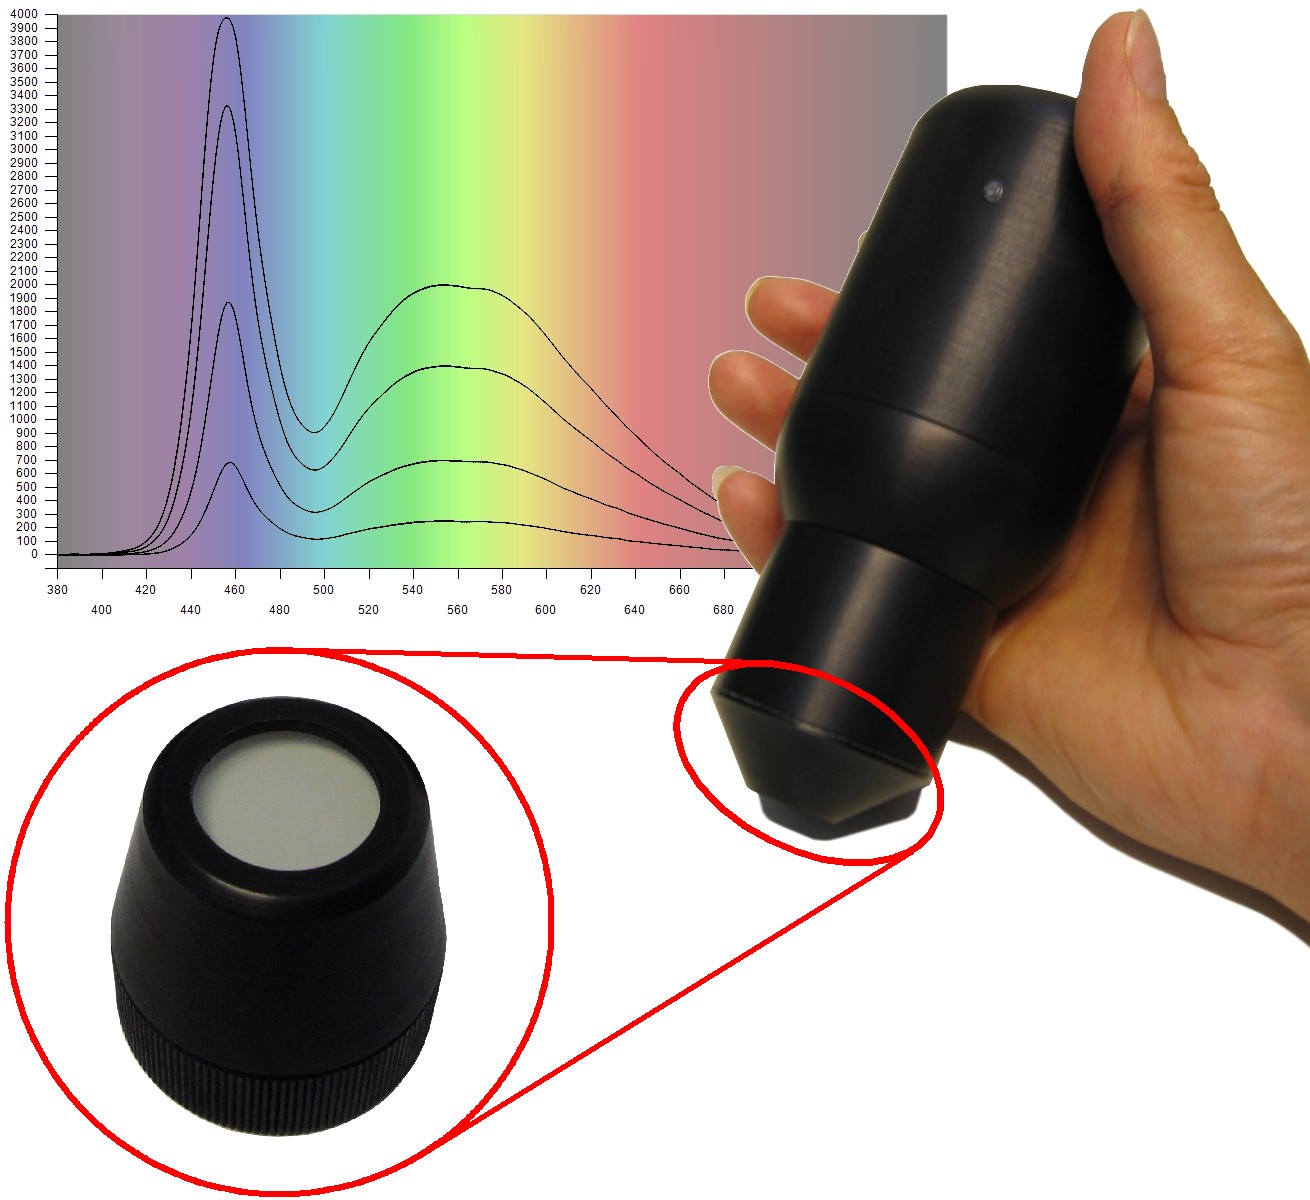 Cet équipement est un spectromètre portatif capable de mesure le spectre visible 380-780 nm avec une résolution de 5 ou 10 nm.